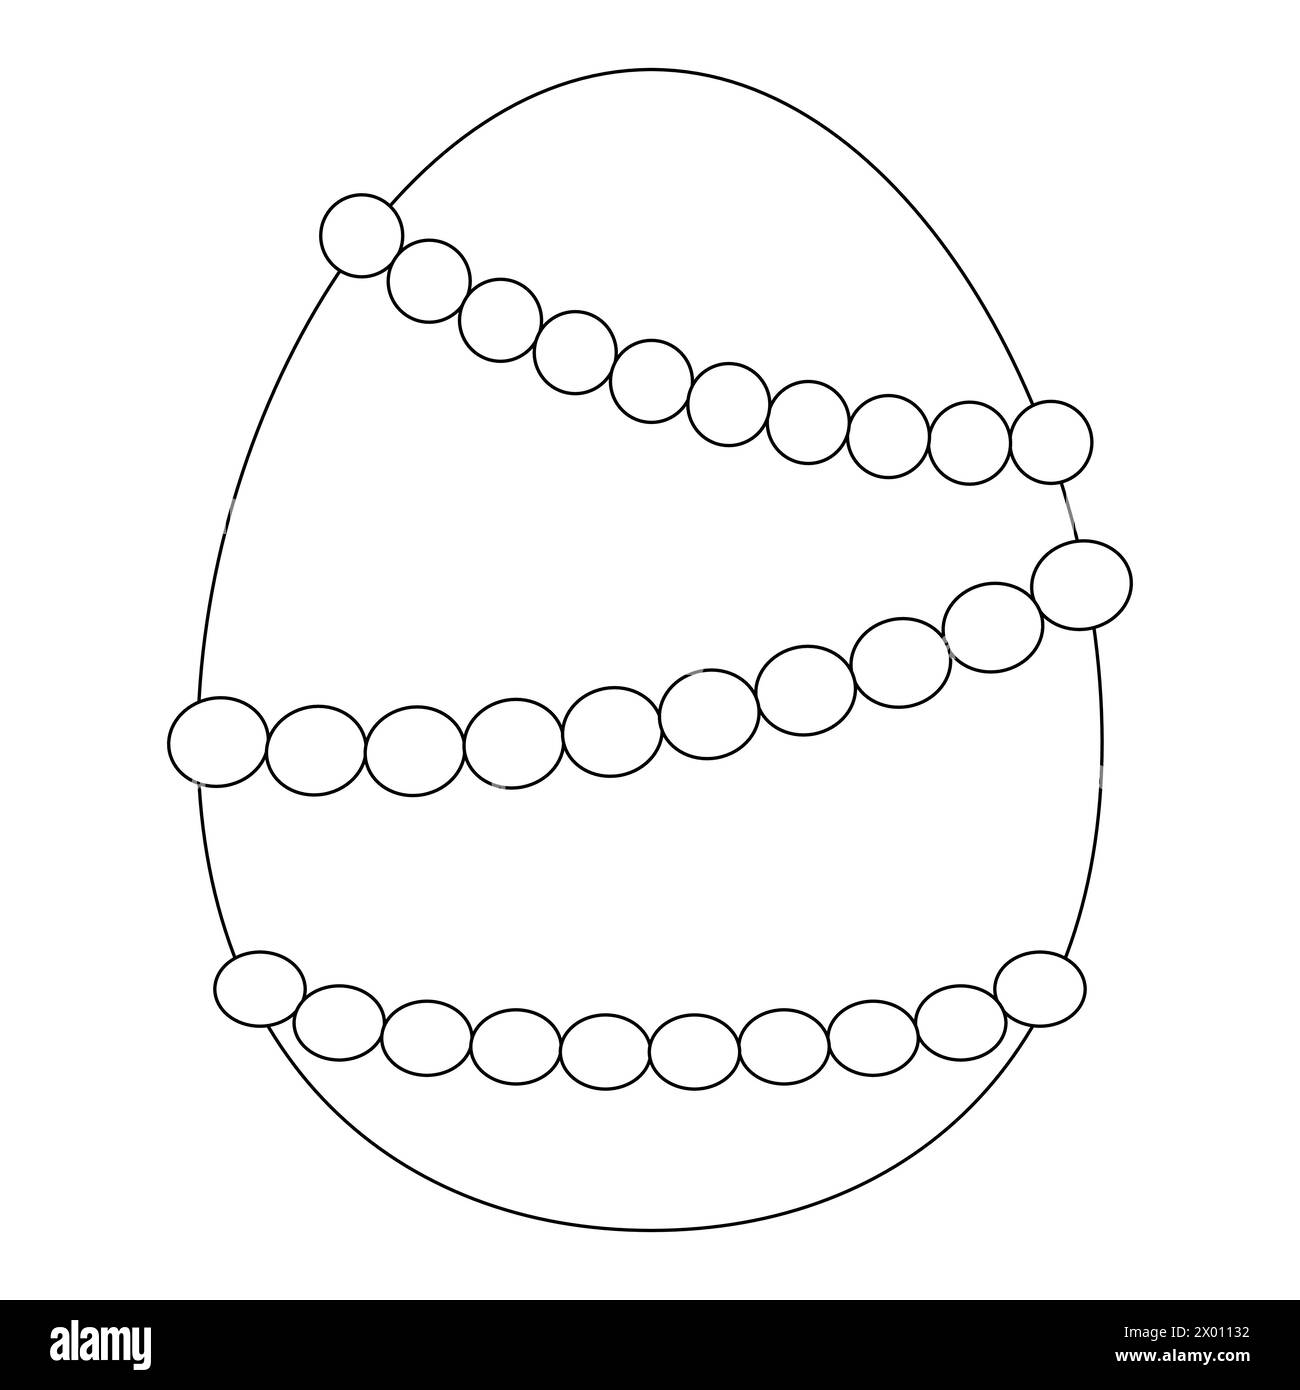 Livres de coloriage pour enfants. Oeuf de Pâques décoré de perles. Dessin vectoriel noir et blanc Illustration de Vecteur